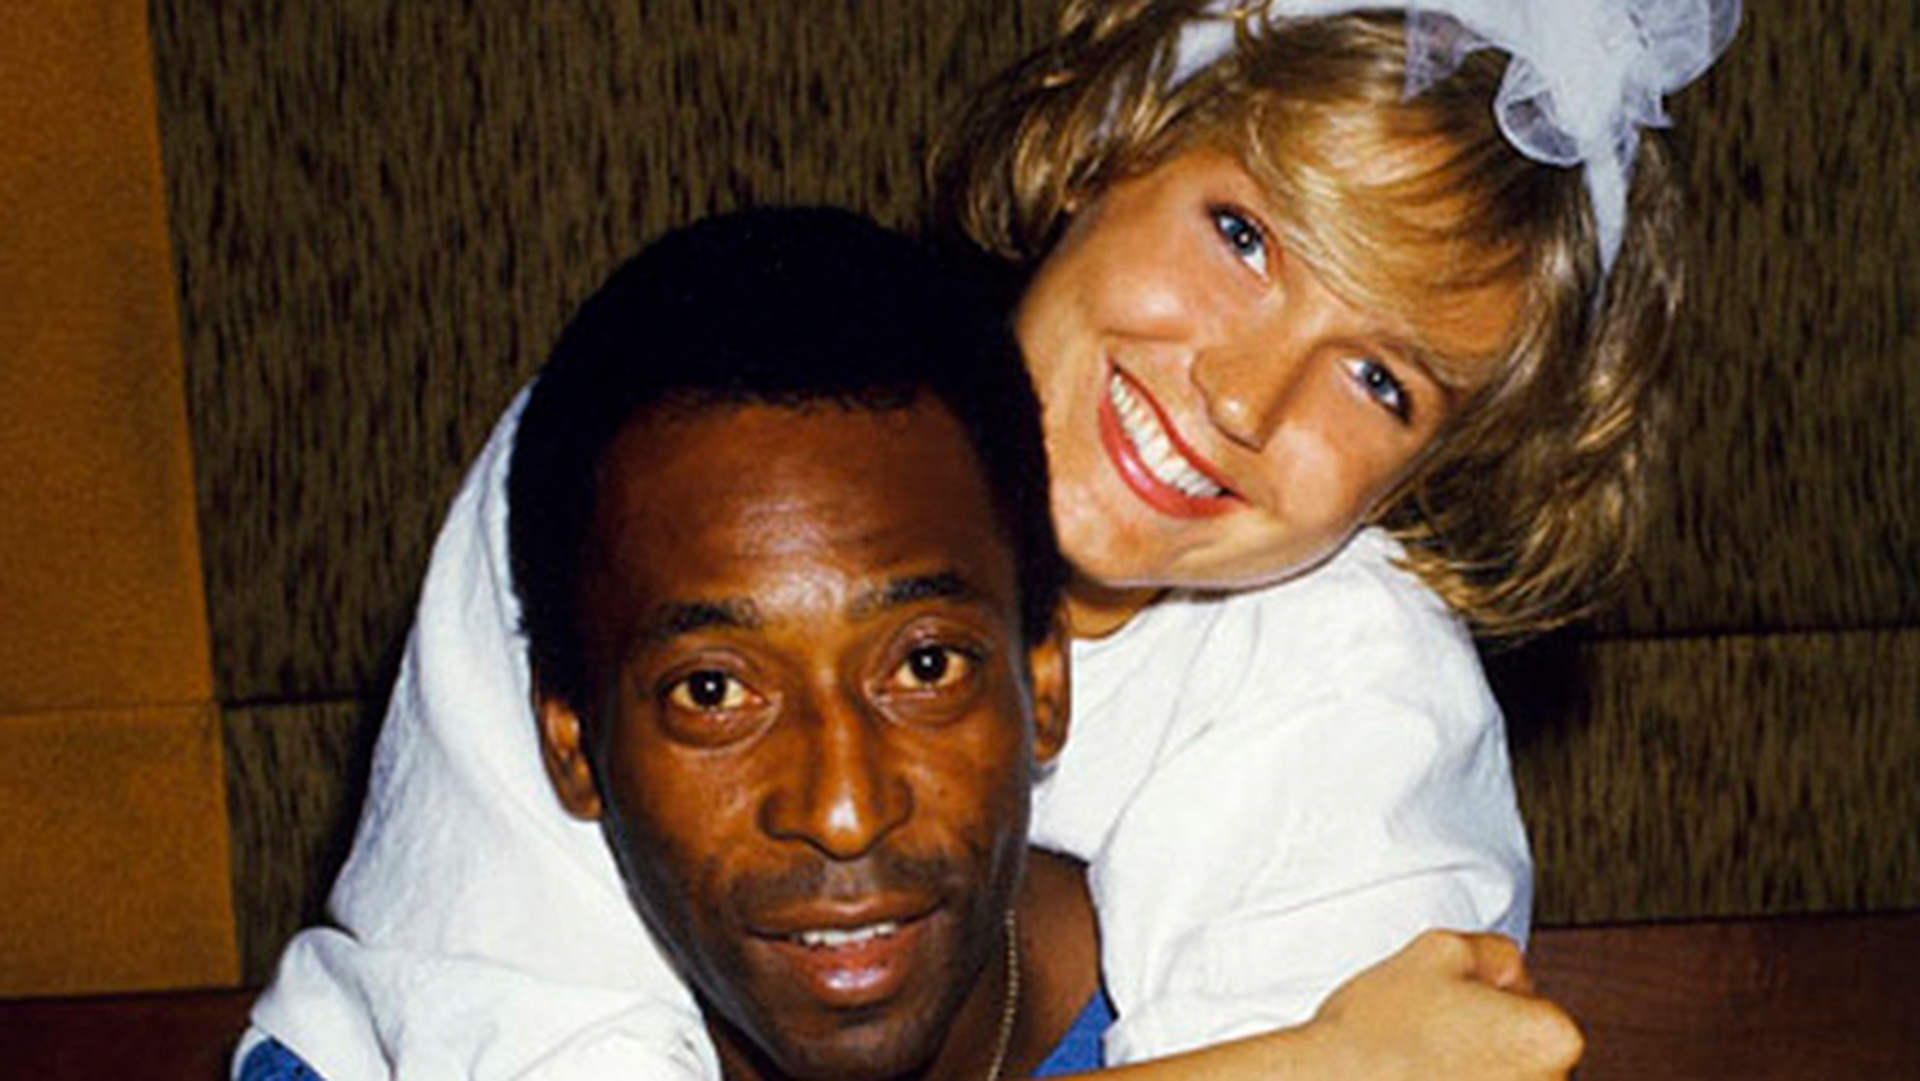 Cuando empezaron su relación, Pelé tenía 40 años y Xuxa 17